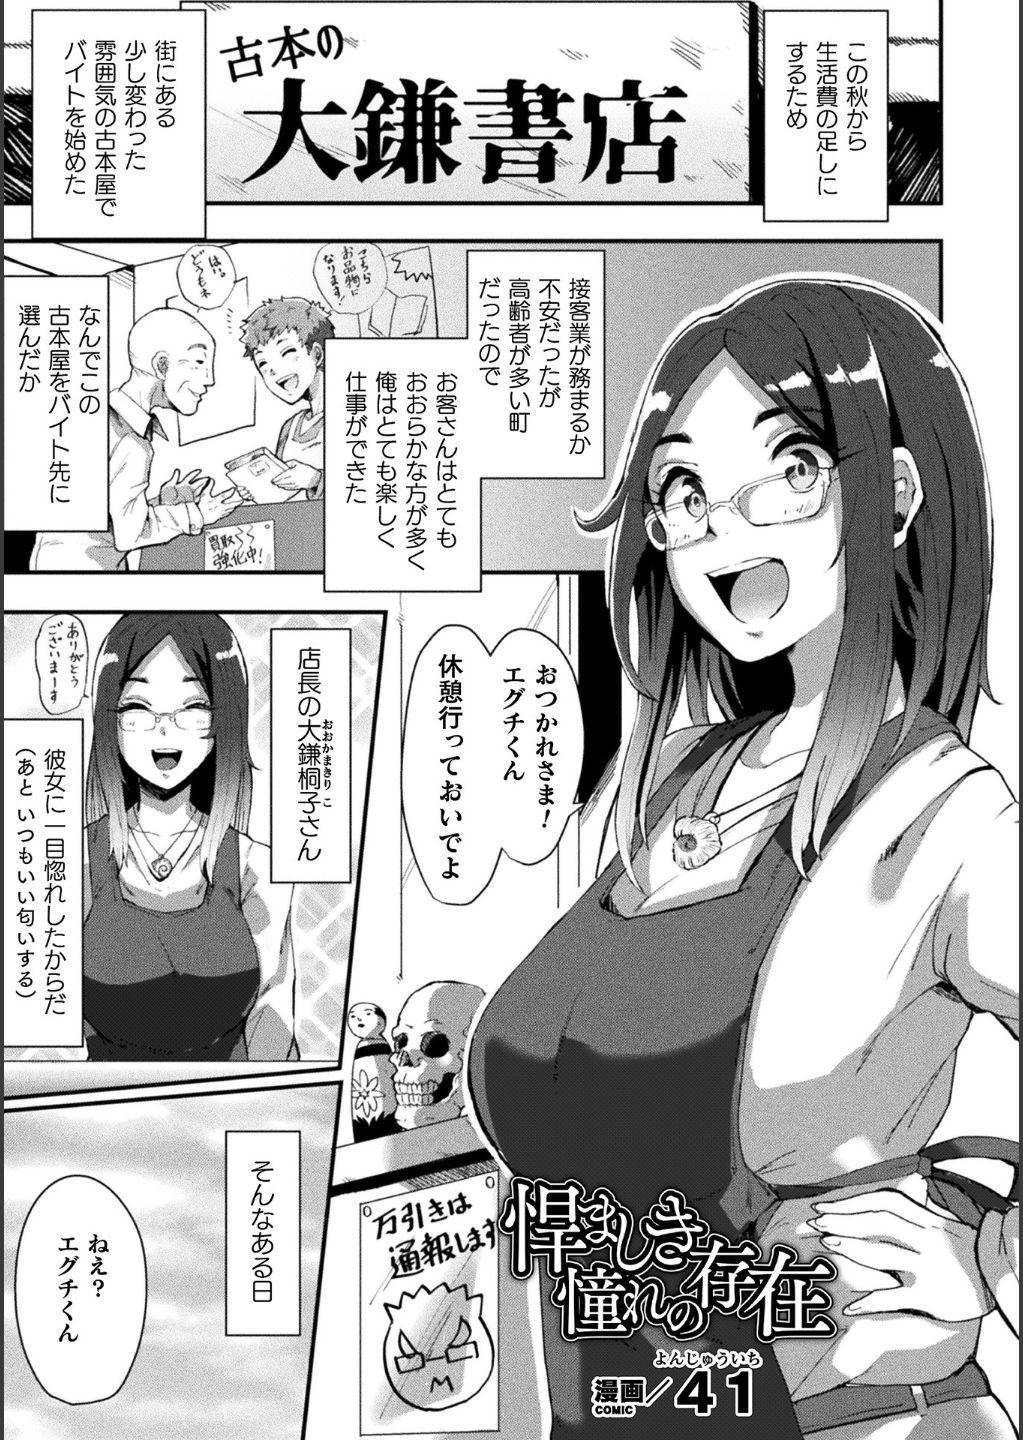 Bessatsu Comic Unreal Bishoujo ni Gitai suru Igyou-tachi Digital Ban Vol. 1 36